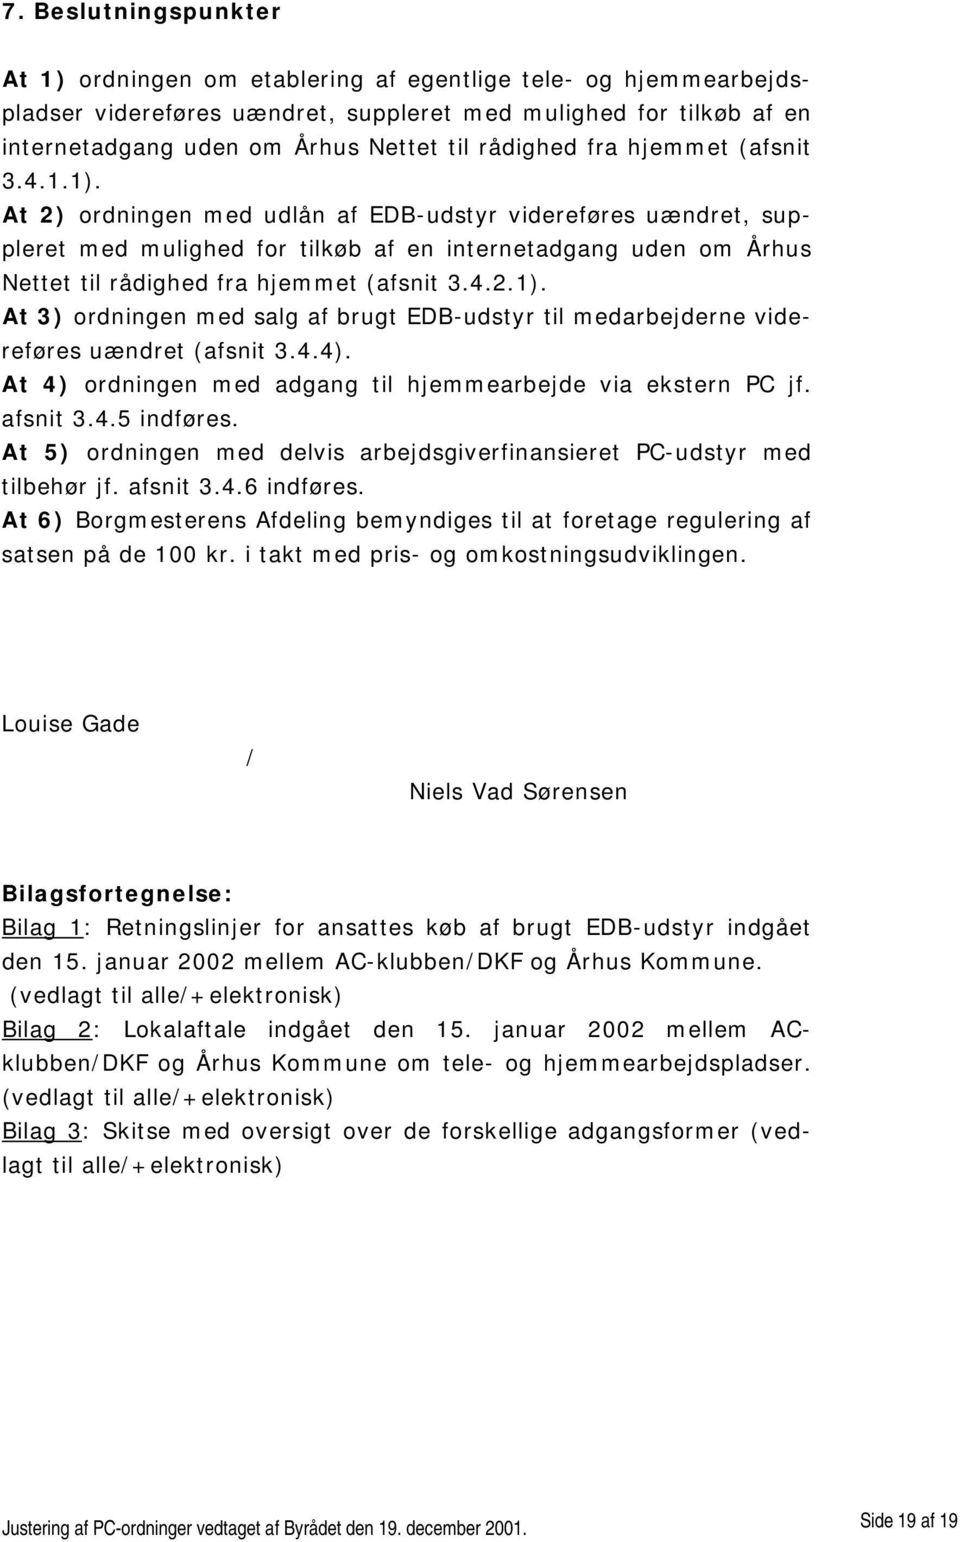 At 2) ordningen med udlån af EDB-udstyr videreføres uændret, suppleret med mulighed for tilkøb af en internetadgang uden om Århus Nettet til rådighed fra hjemmet (afsnit 3.4.2.1).